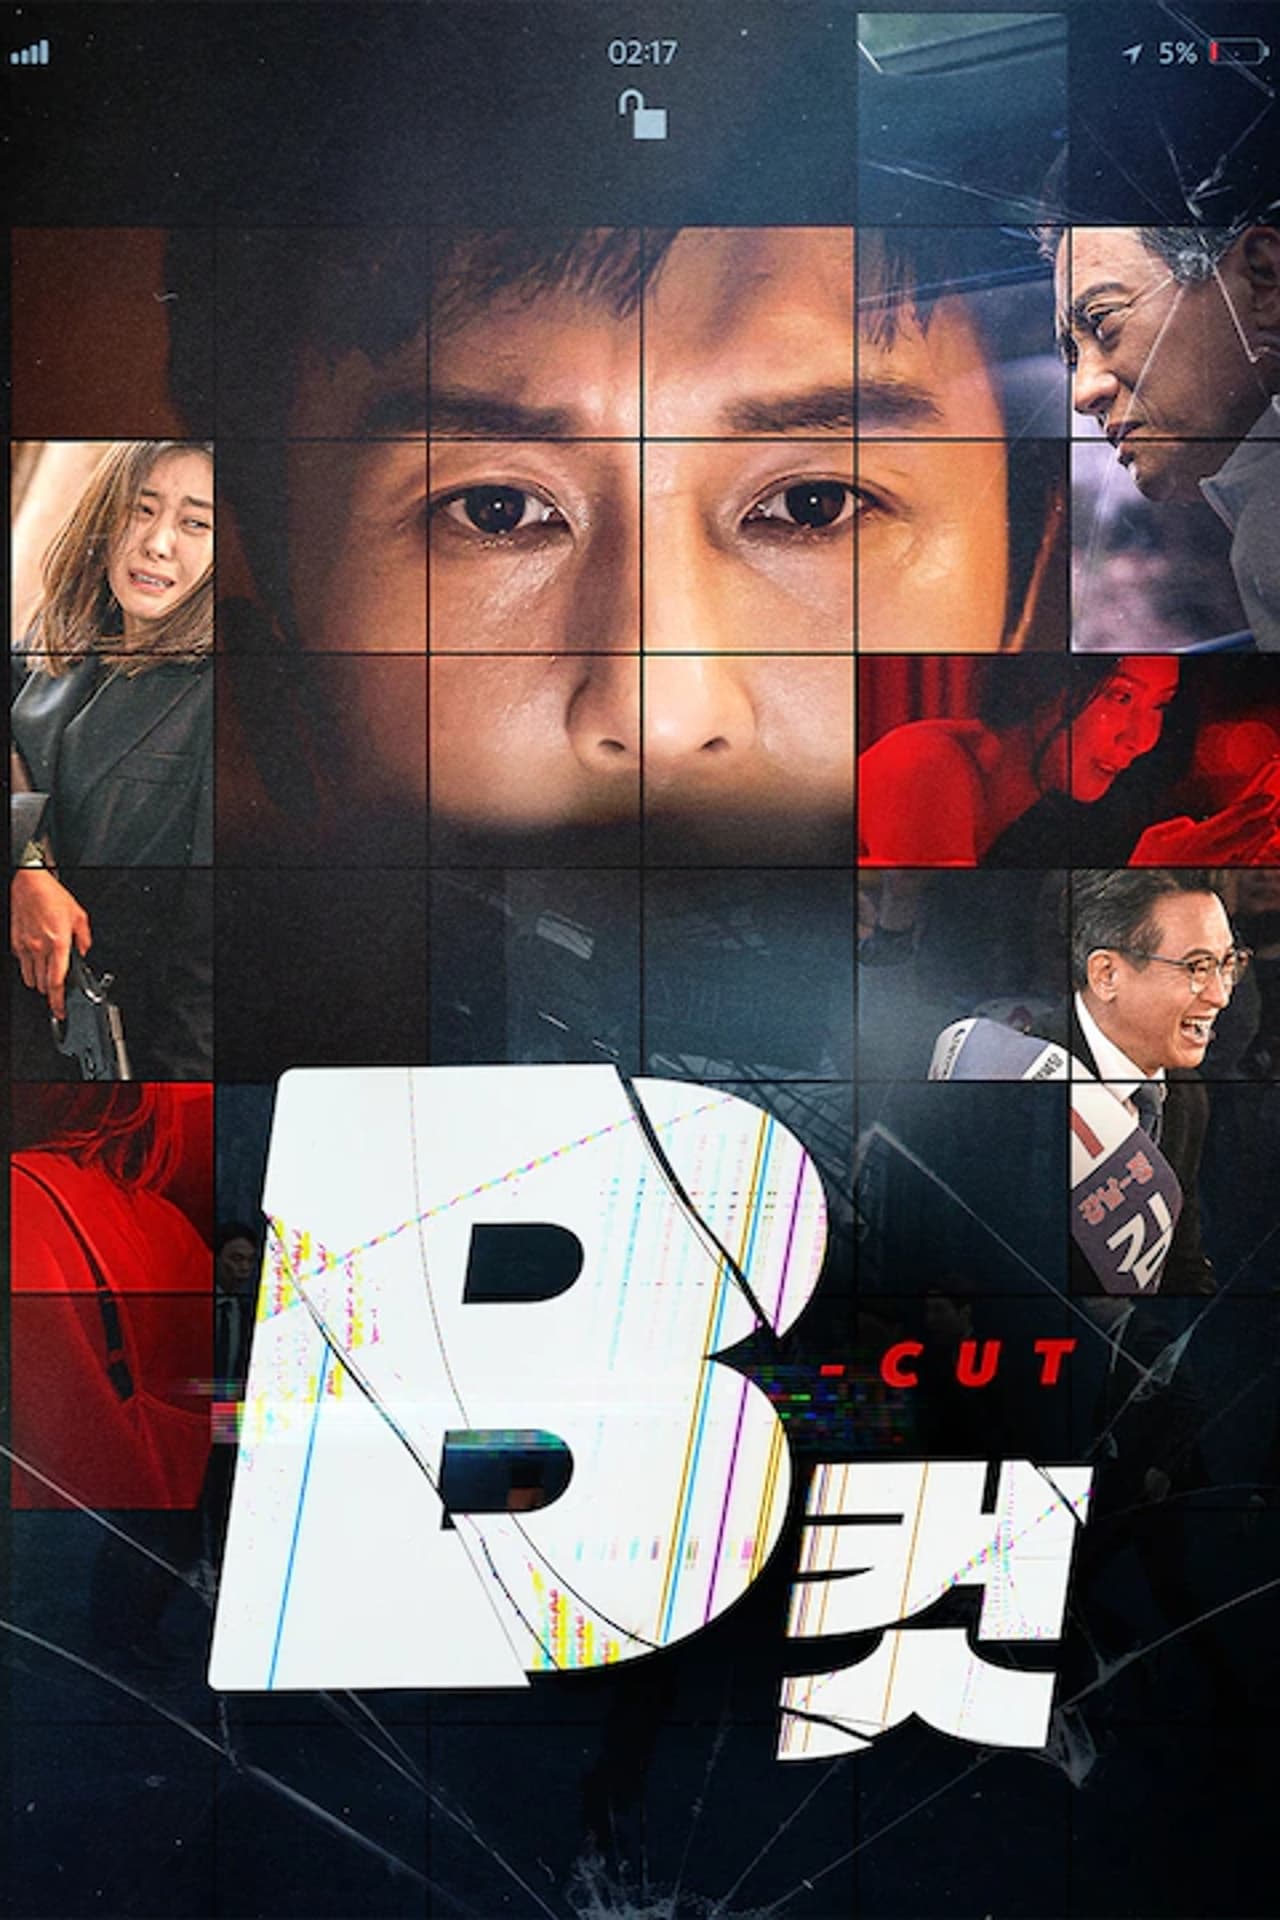 B Cut